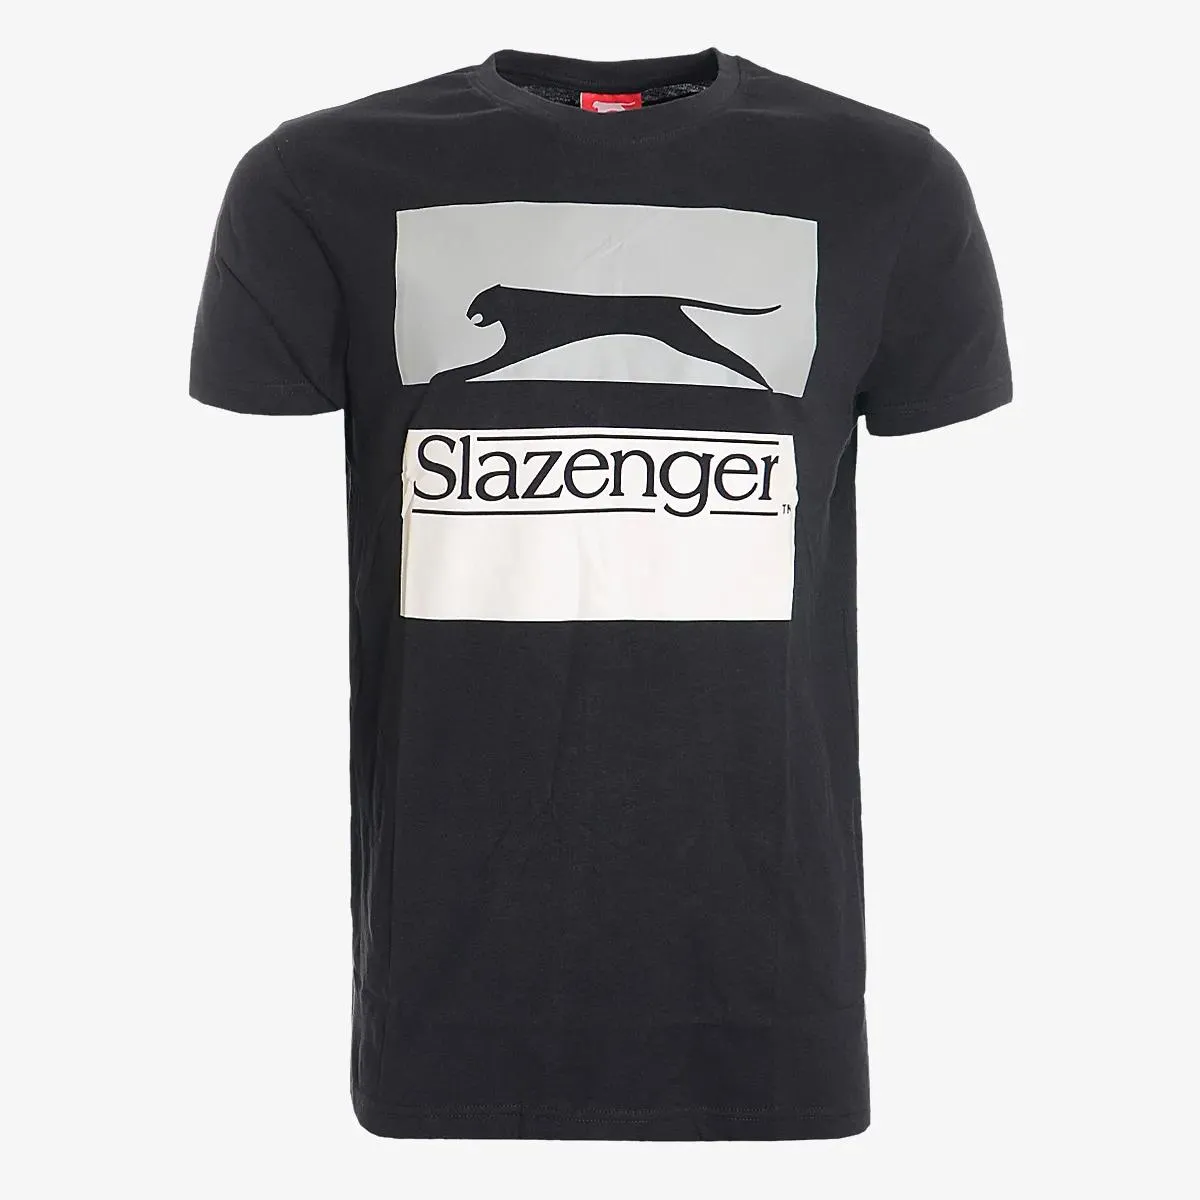 Slazenger T-shirt Tones 